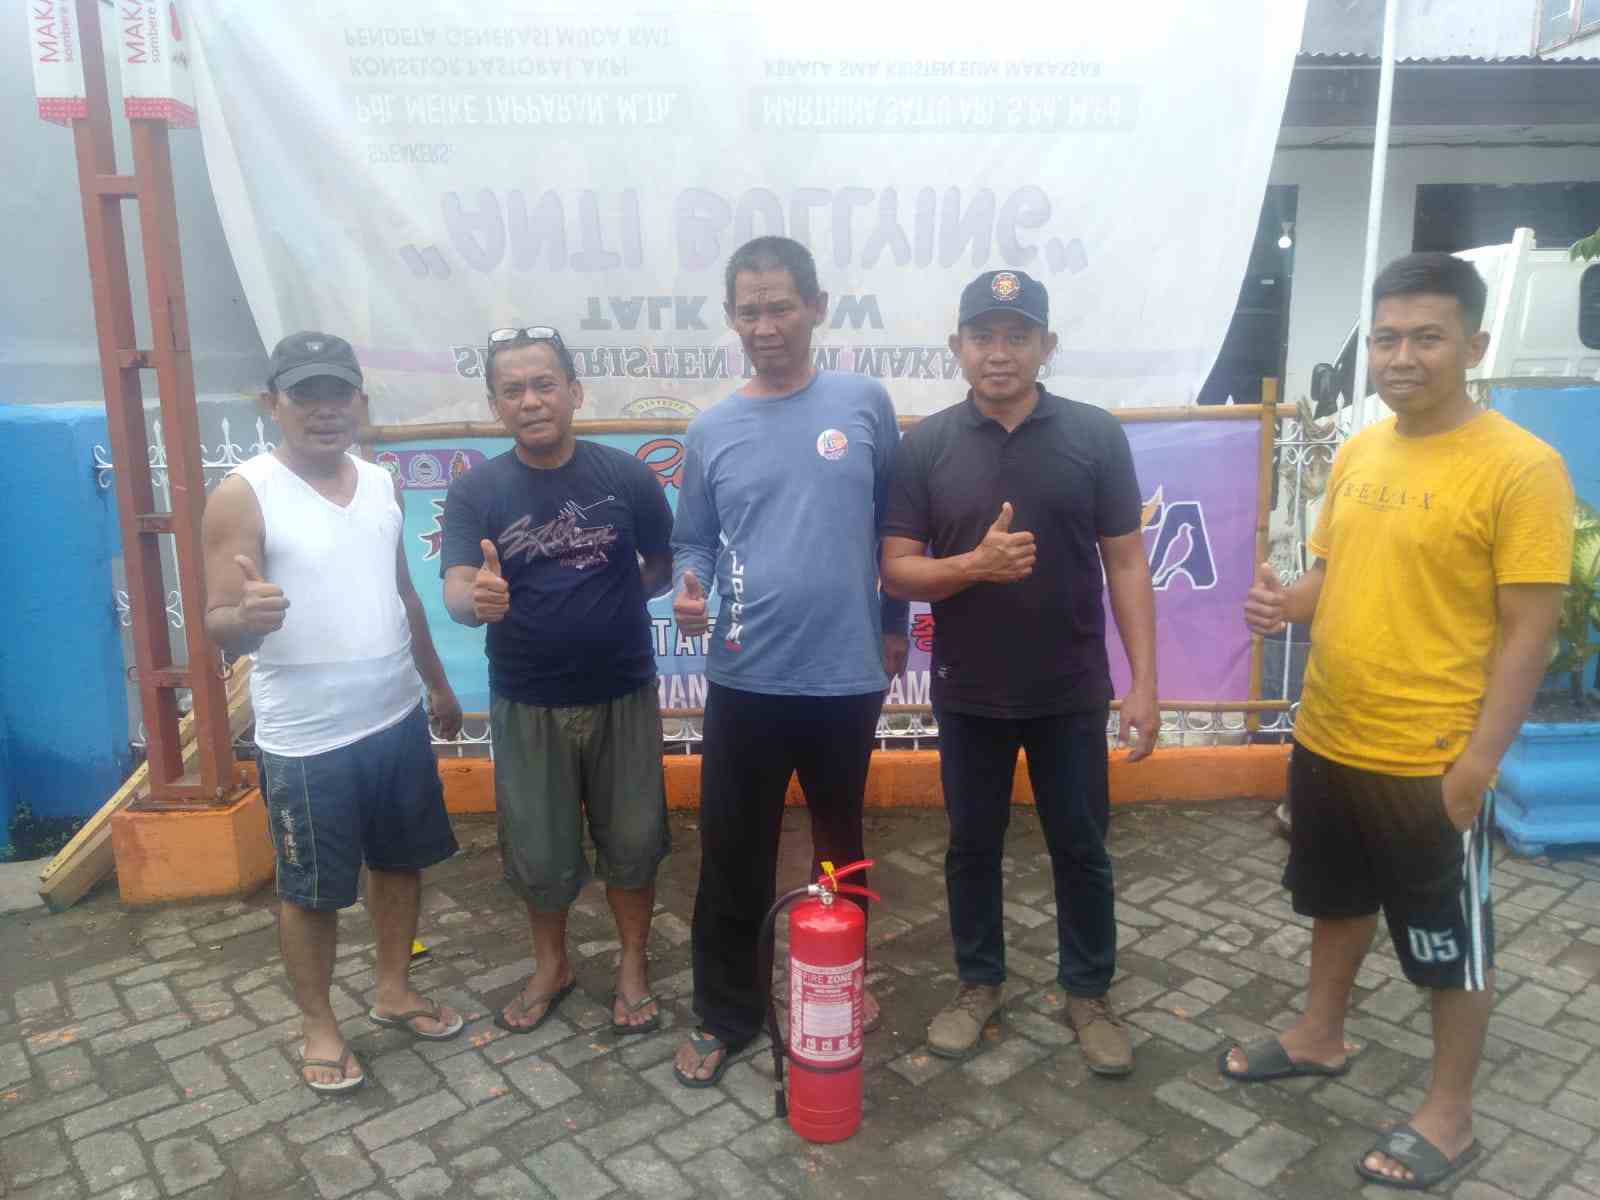 Dinas Pemadam Kota Makassar Kebakaran (Damkar) Makassar salurkan Alat Pemadam Kebakaran